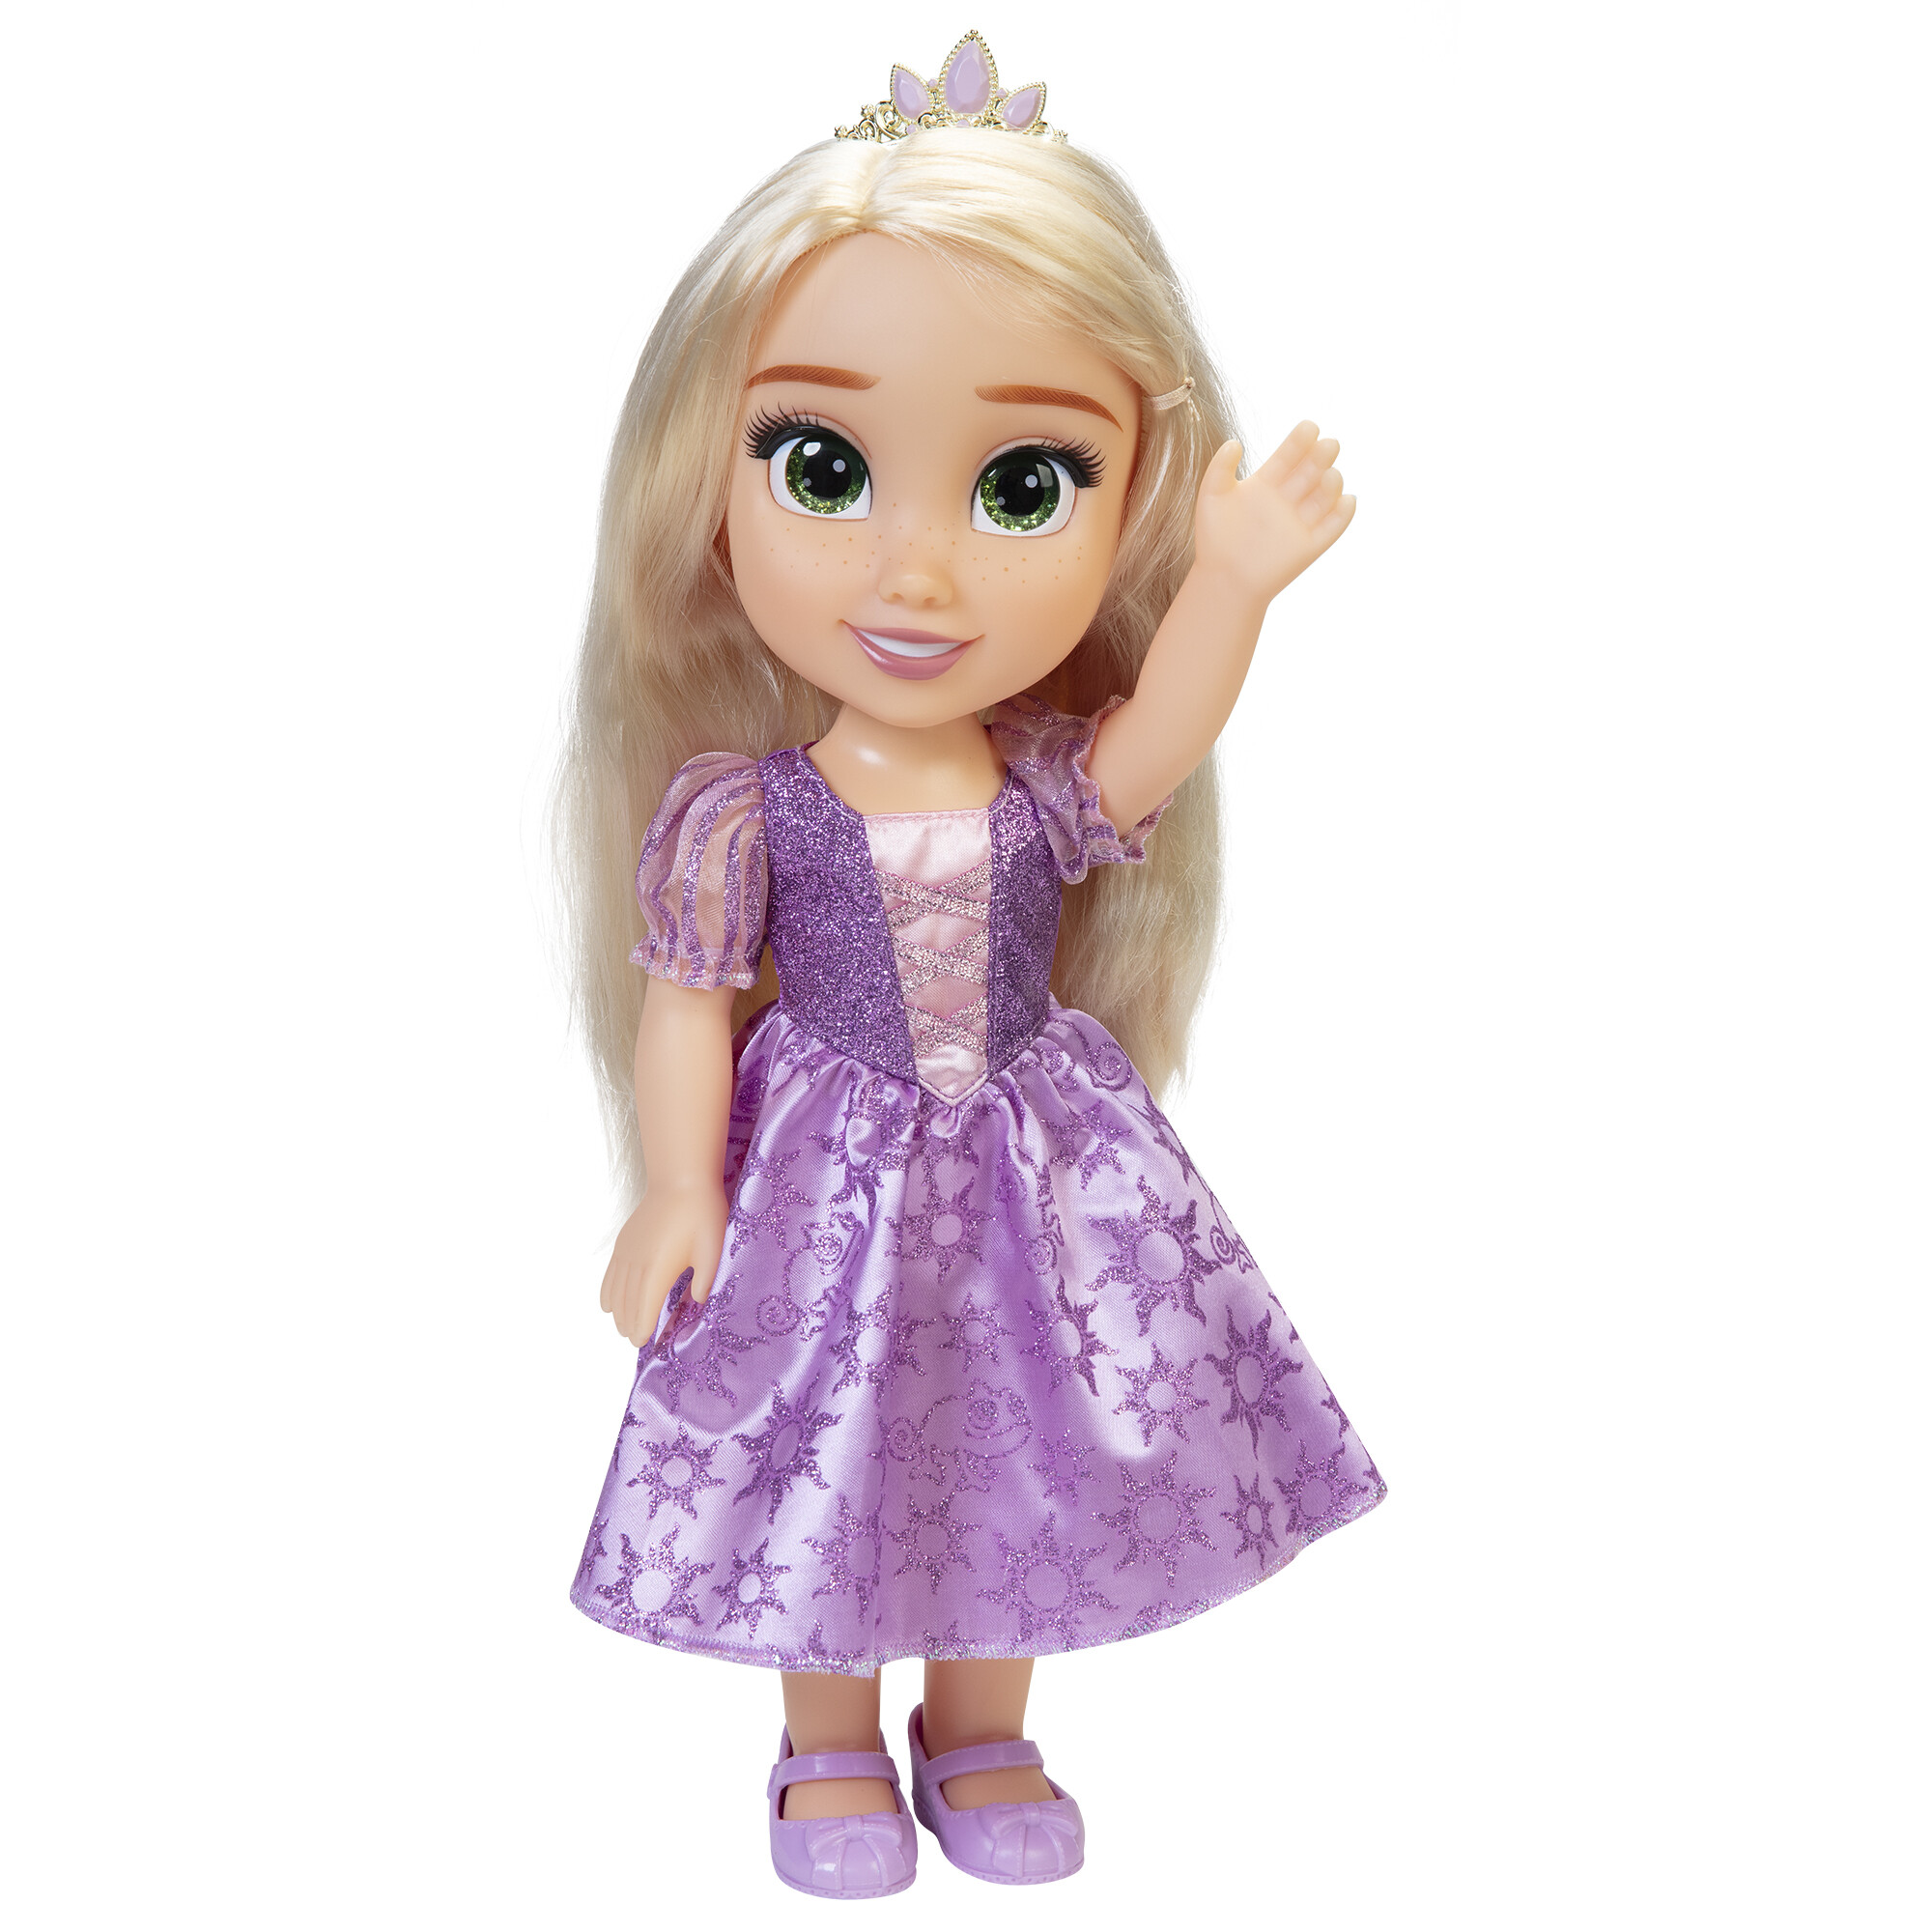 Disney princess rapunzel. bambola estremamente dettagliata dai meravigliosi capelli di seta e dagli occhi scintillanti - DISNEY PRINCESS